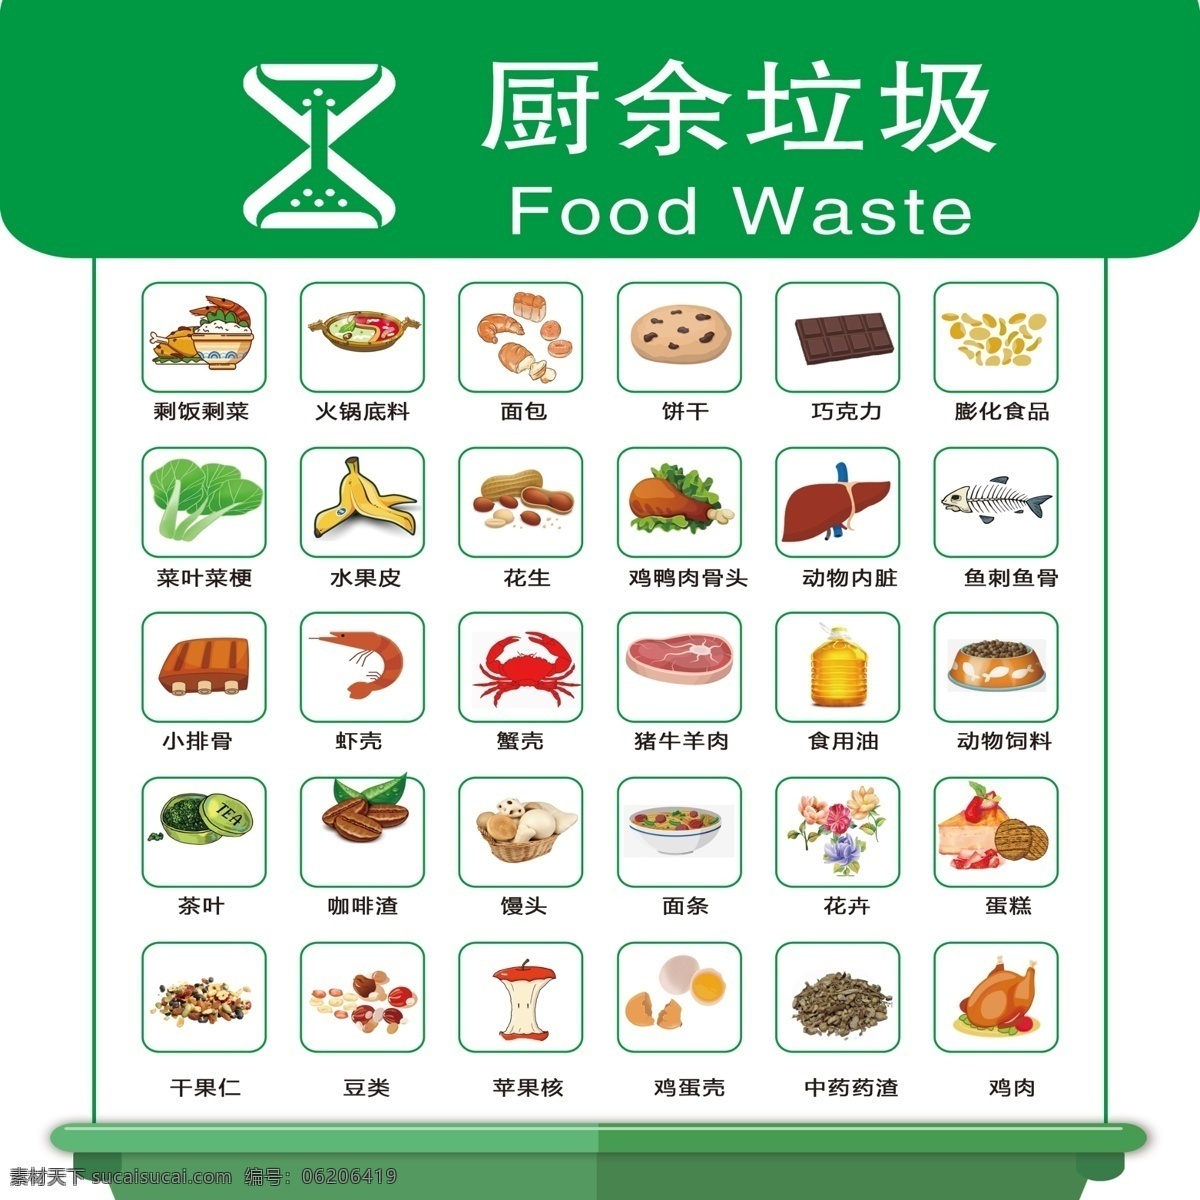 厨余垃圾图片 北京市 垃圾 分类 厨余垃圾 垃圾分类表